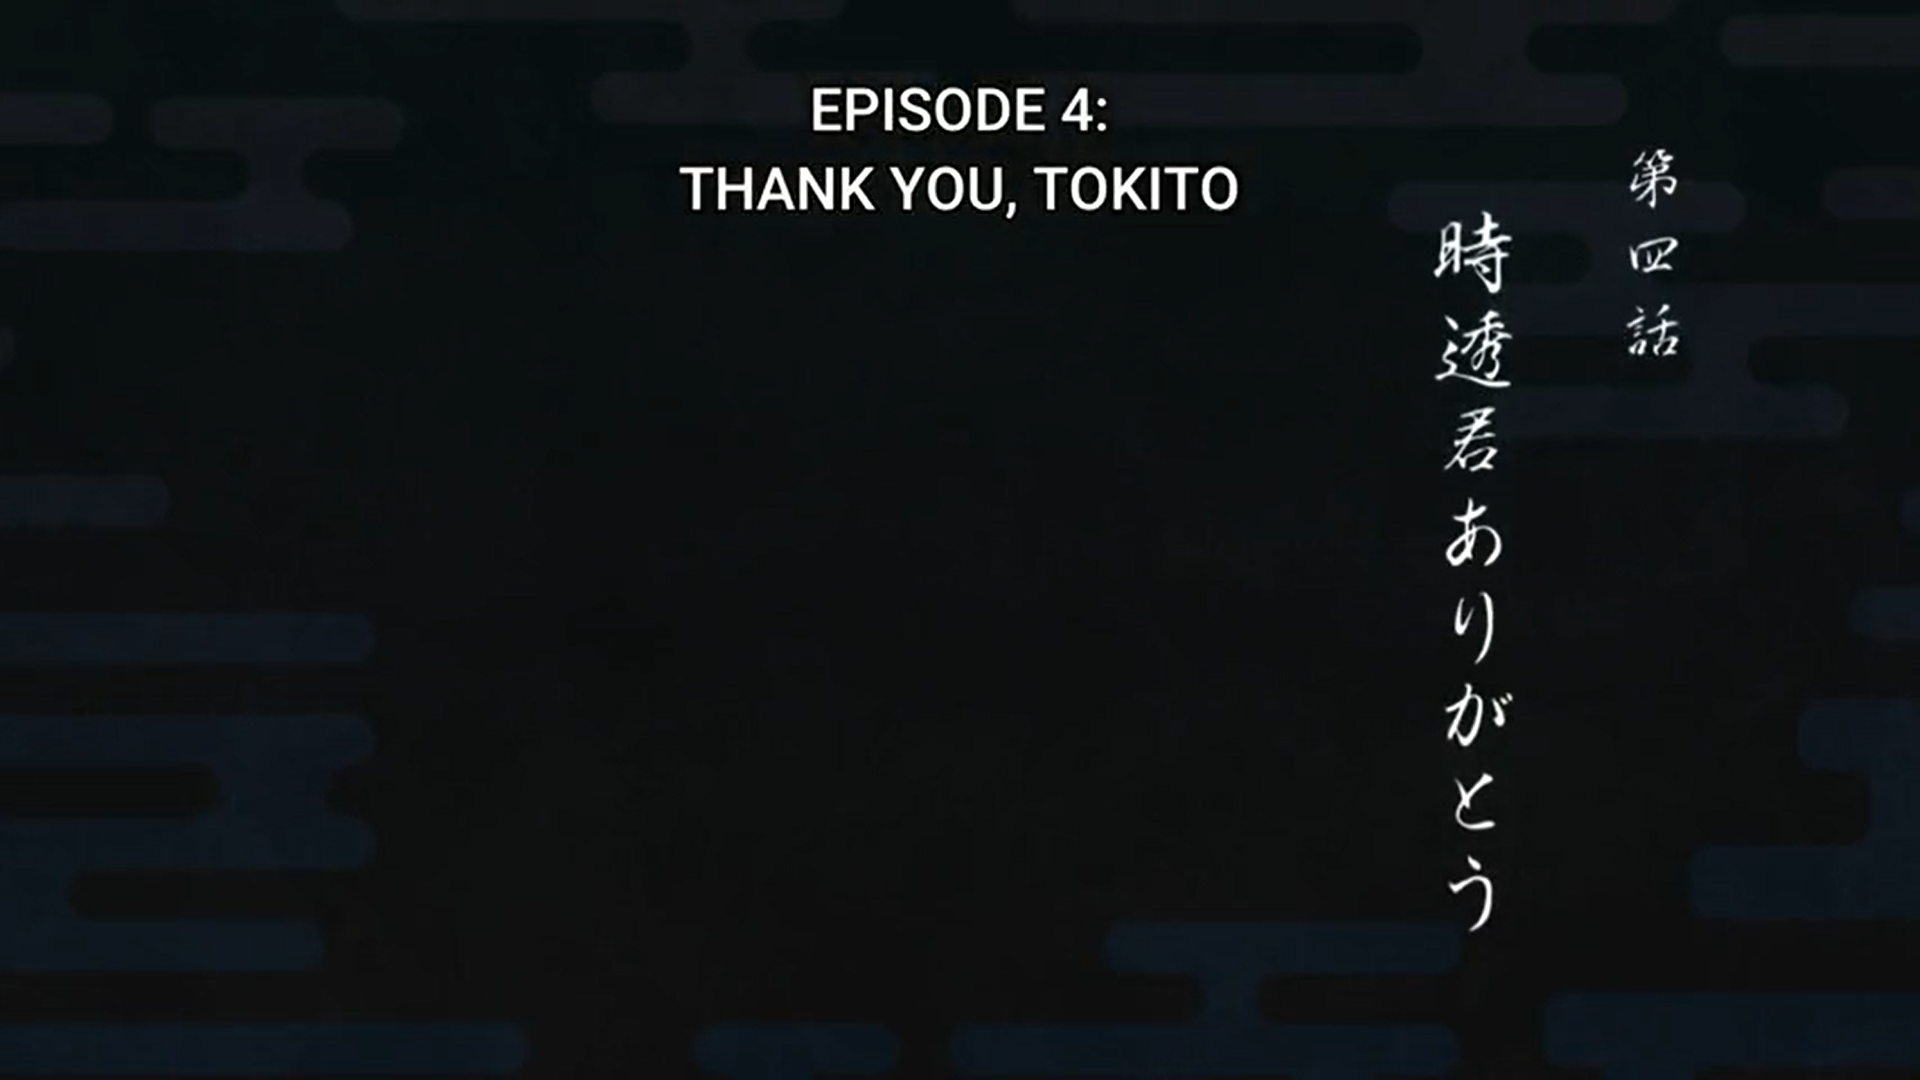 Demon Slayer Season 3 Episode 4 Review: Thank You, Tokito